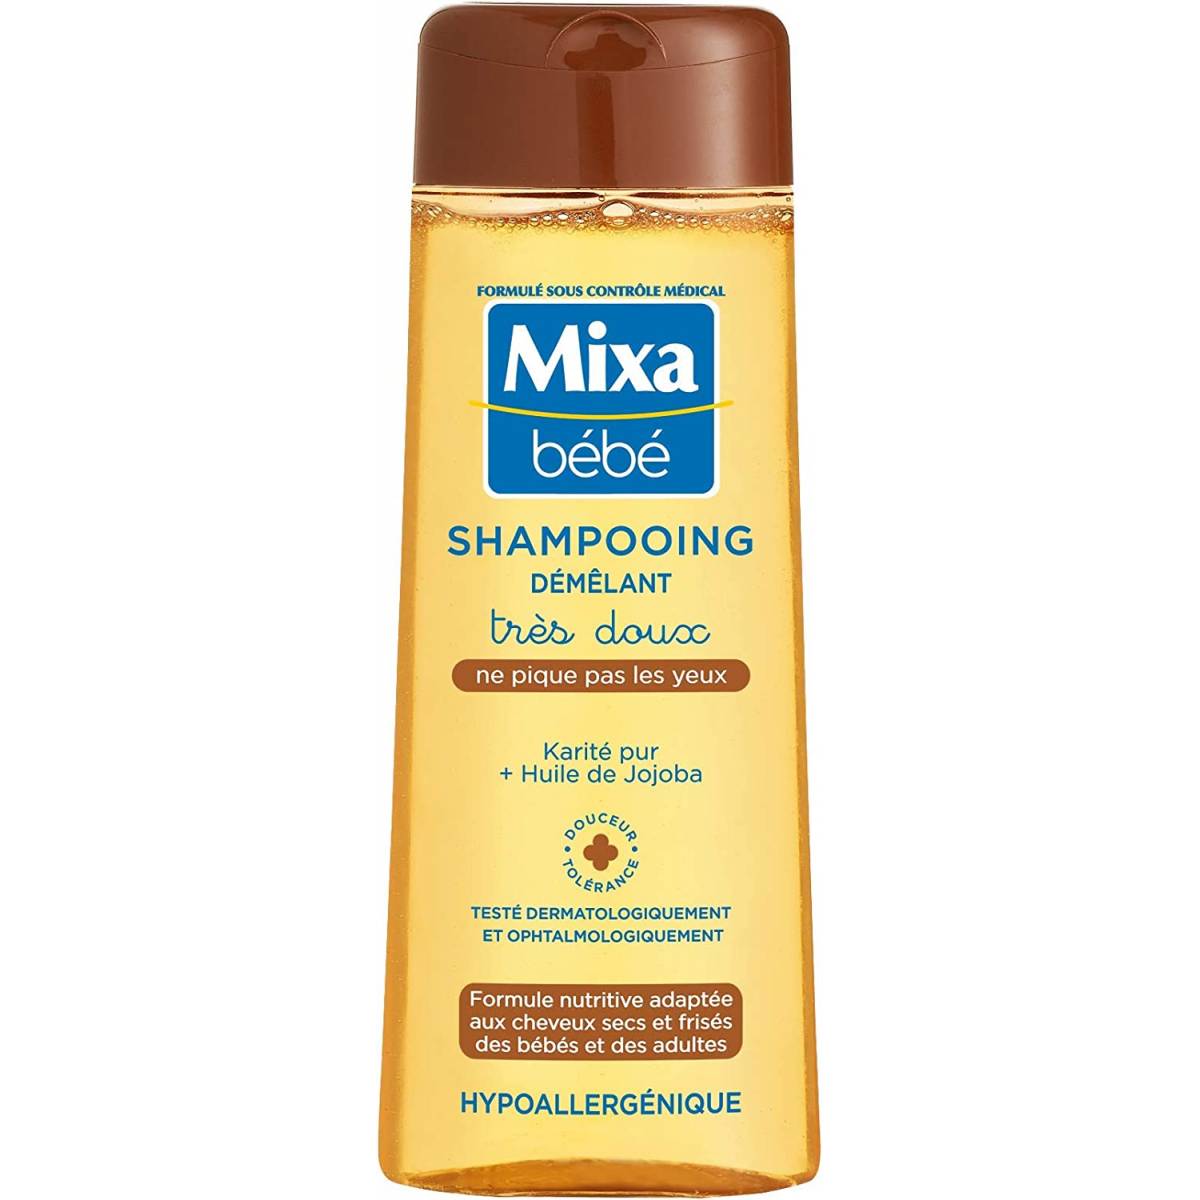 Mixa bébé Shampooings très doux hypoallergénique 250ml - MaxxiDiscount